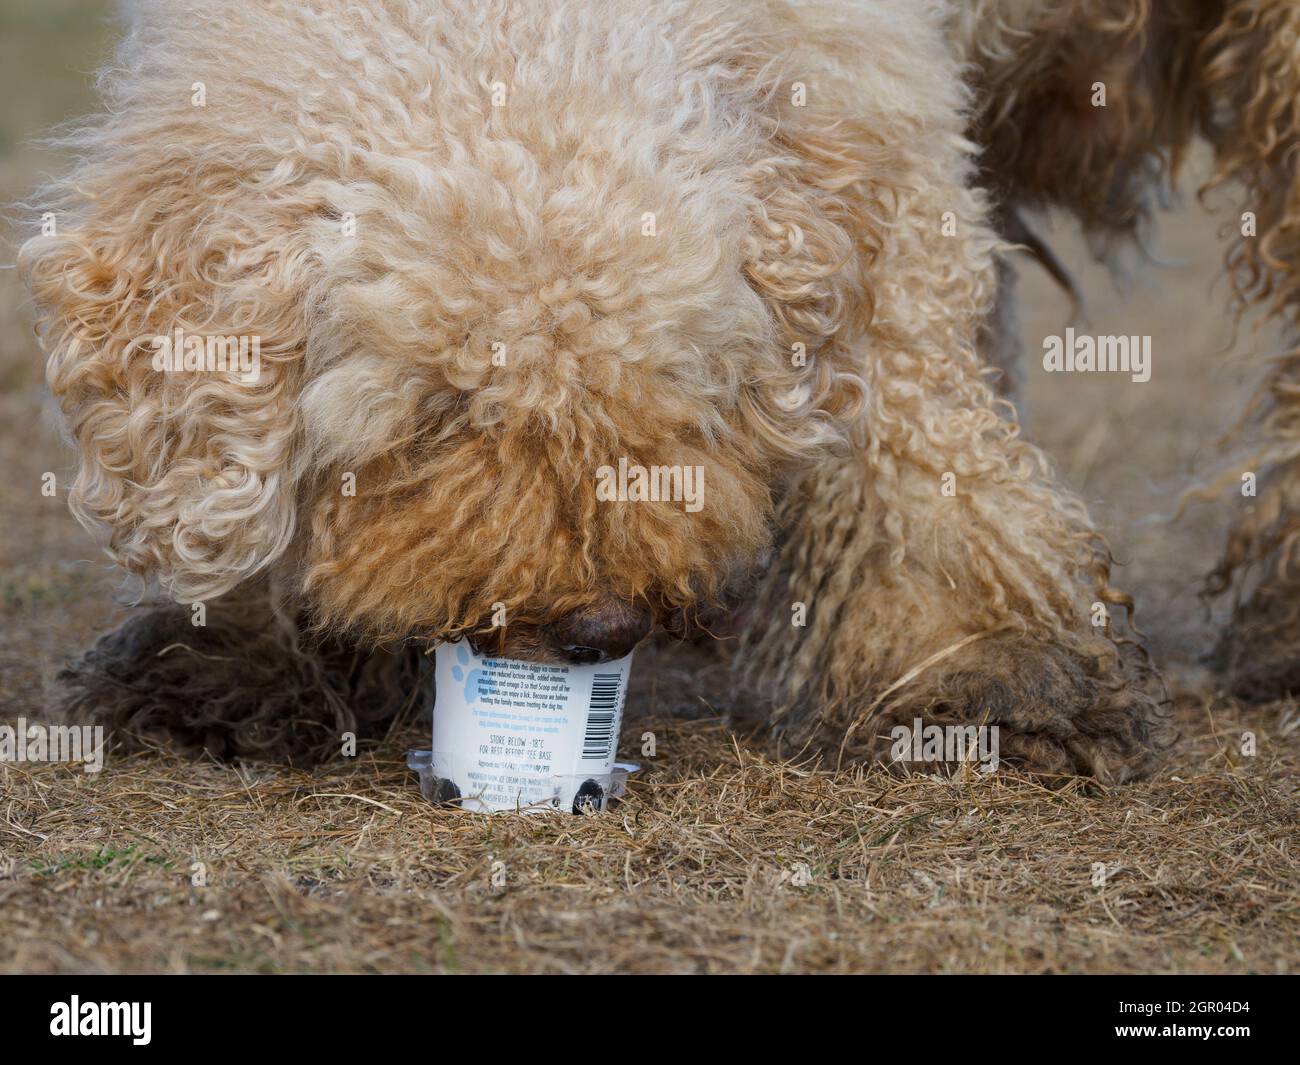 Dog eating doggie ice cream out of tub, UK Stock Photo